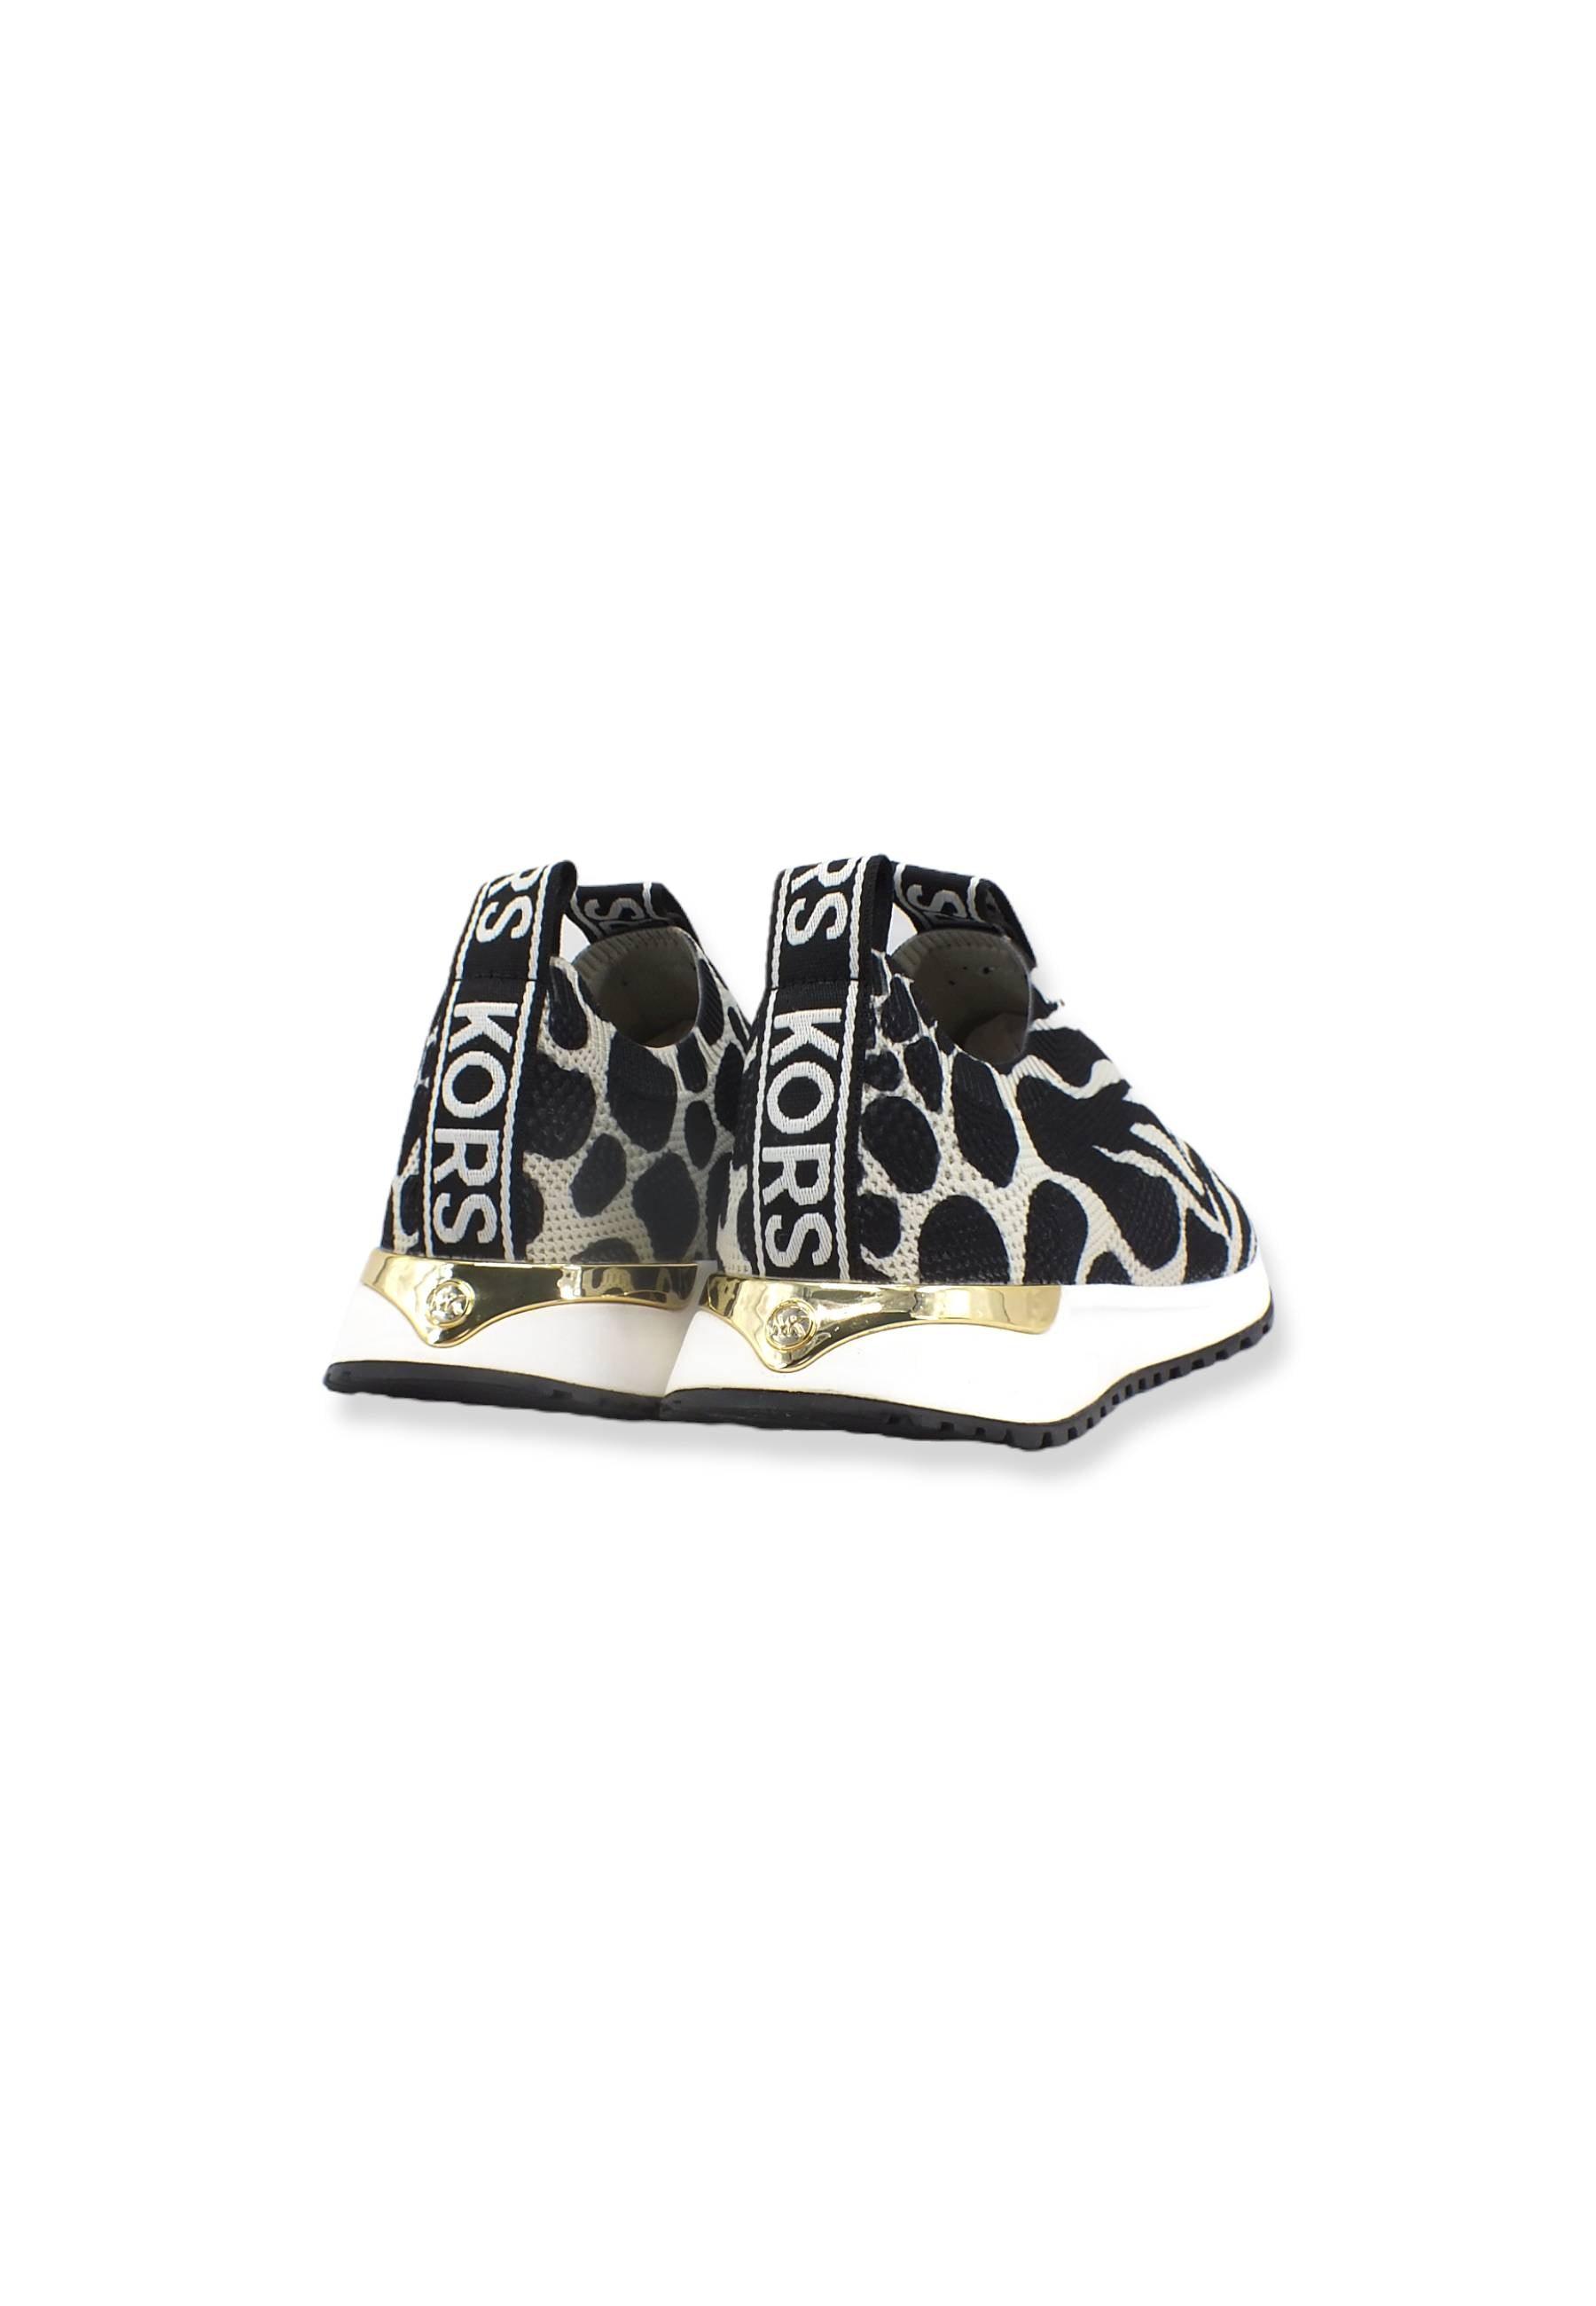 MICHAEL KORS Bodie Slip On Sneaker Donna Fantasia Animalier Black Multi 43T2BDFS1P - Sandrini Calzature e Abbigliamento